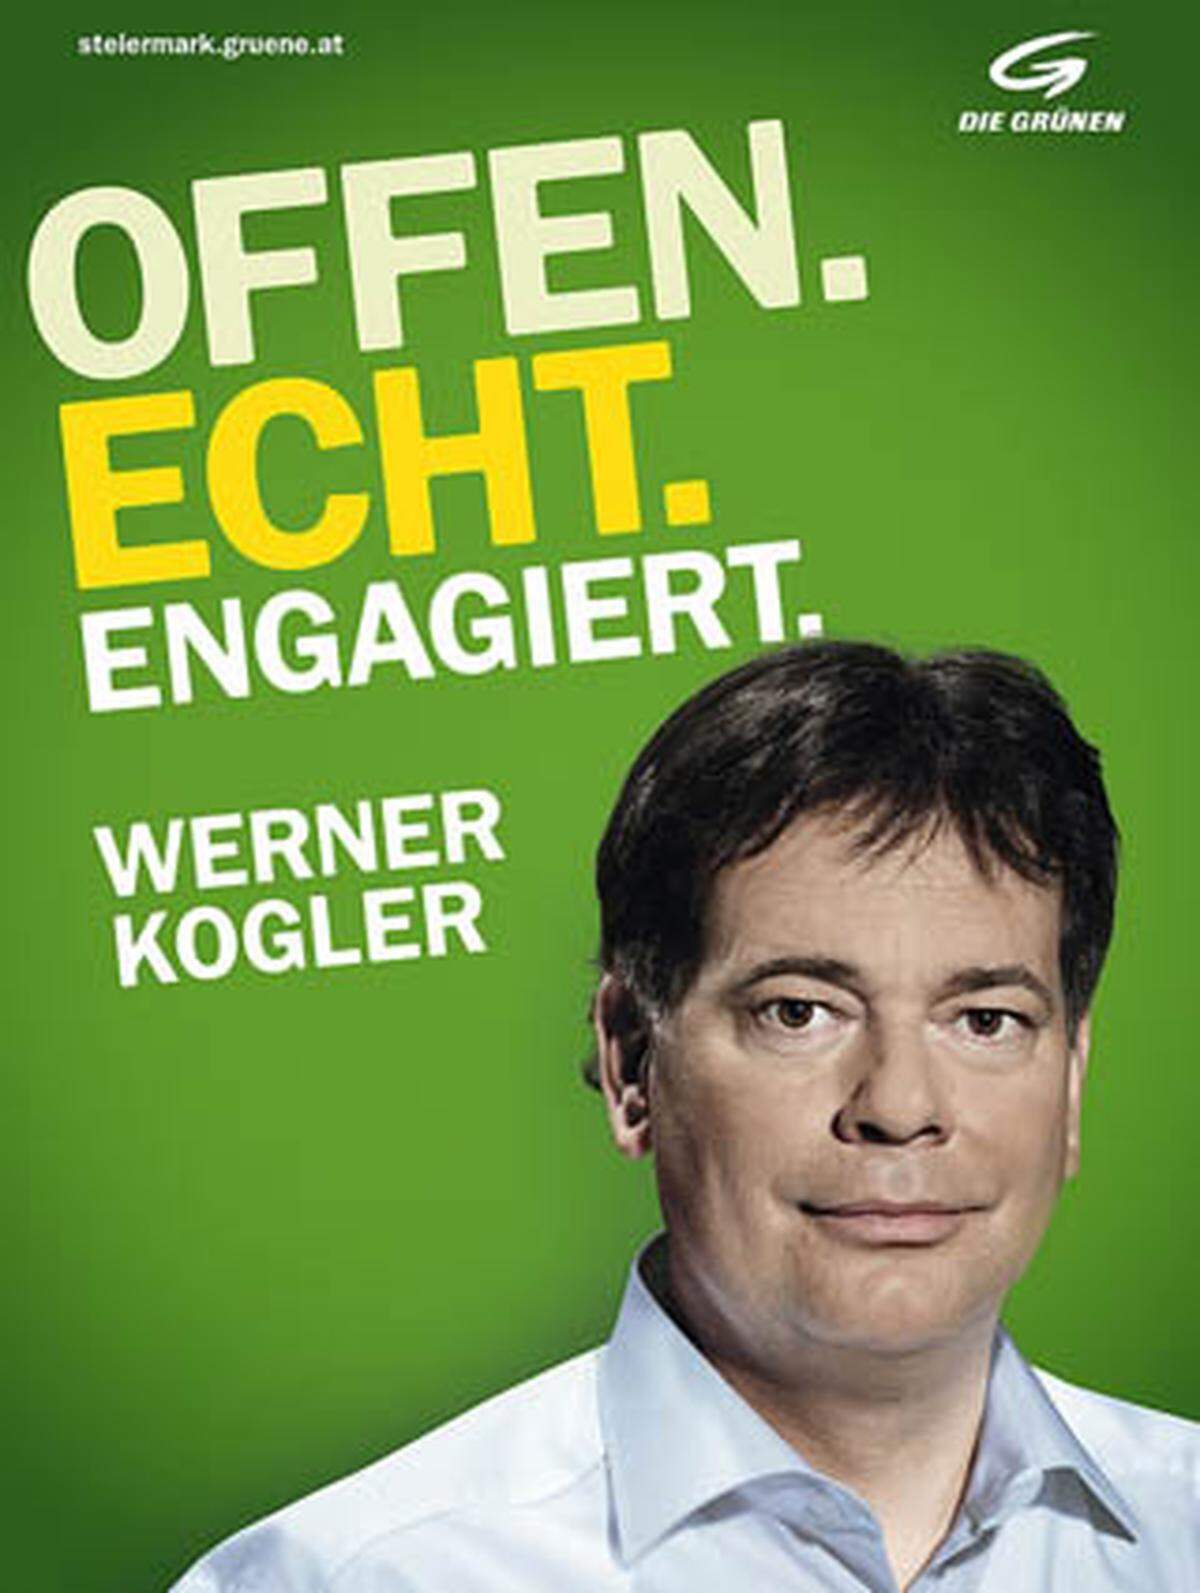 Die steirischen Grünen plädieren mit ihrem "Grünen Manifest" für eine umweltfreundliche, soziale und offene Steiermark. Spitzenkandidat Werner Kogler, der kurzfristig das Ruder übernehmen musste, wird als "offen, echt und engagiert" gepriesen.